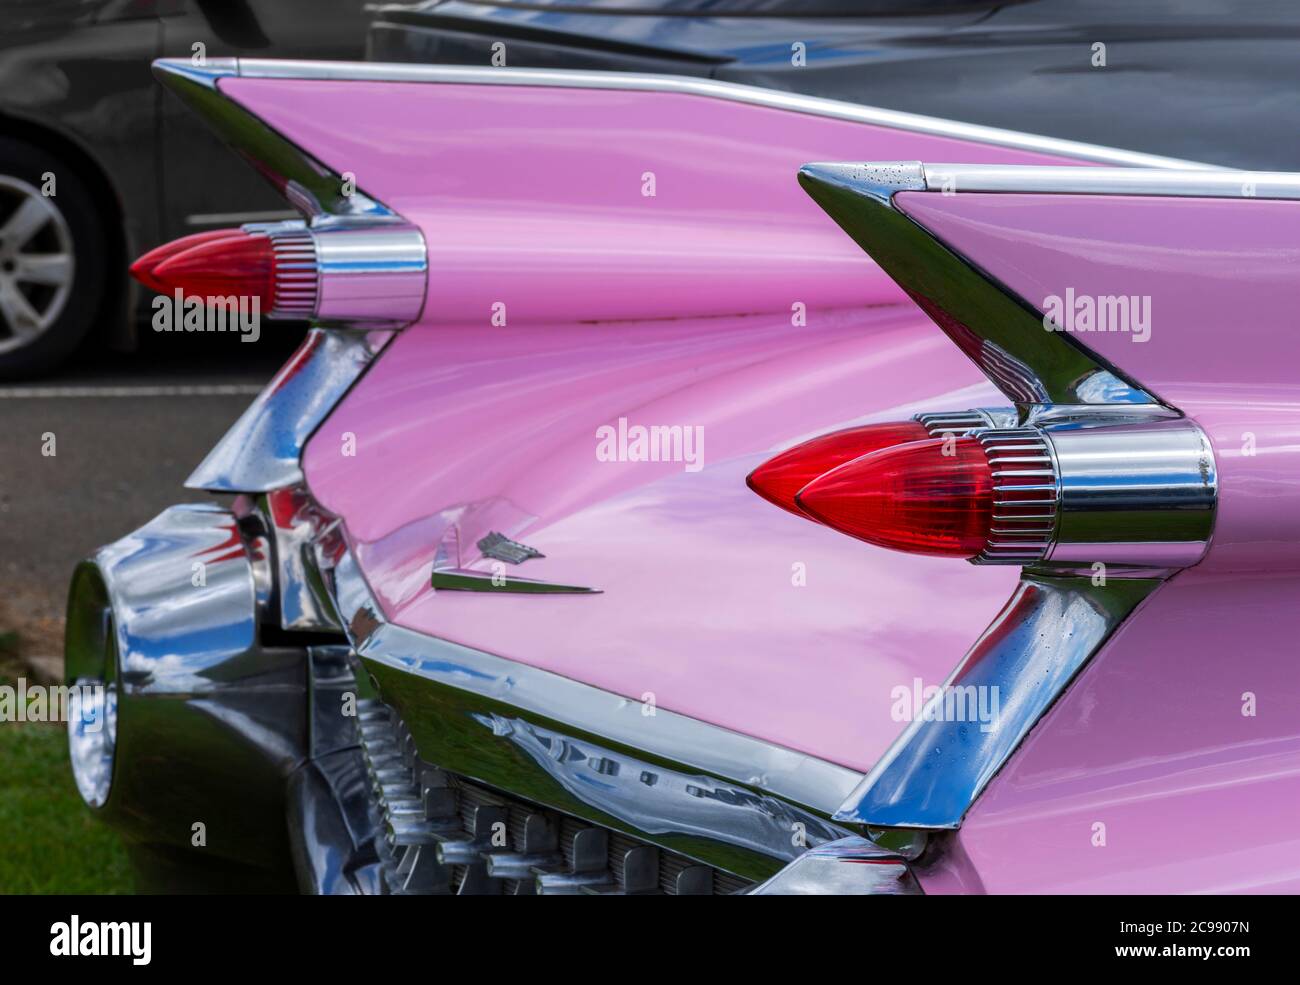 Les ailerons d'une voiture Cadillac rose des années 1950 Banque D'Images